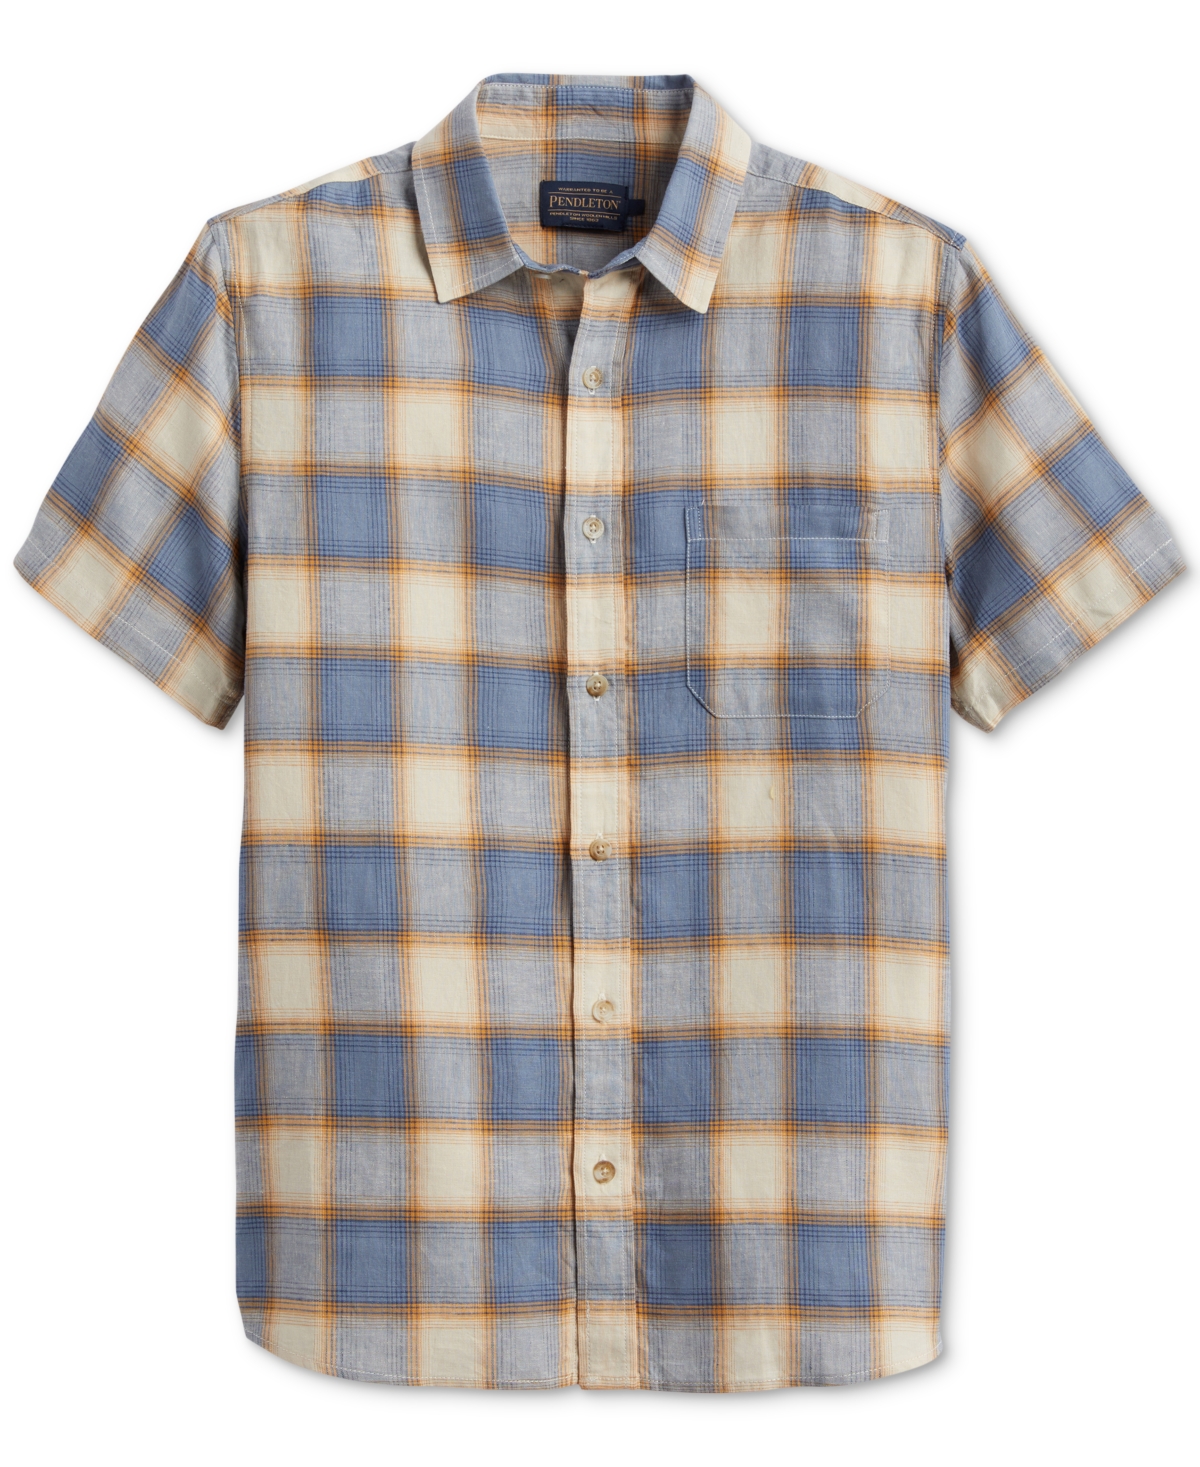 Men's Dawson Plaid Short Sleeve Button-Front Shirt - Adobe, Tan, Blue Plaid